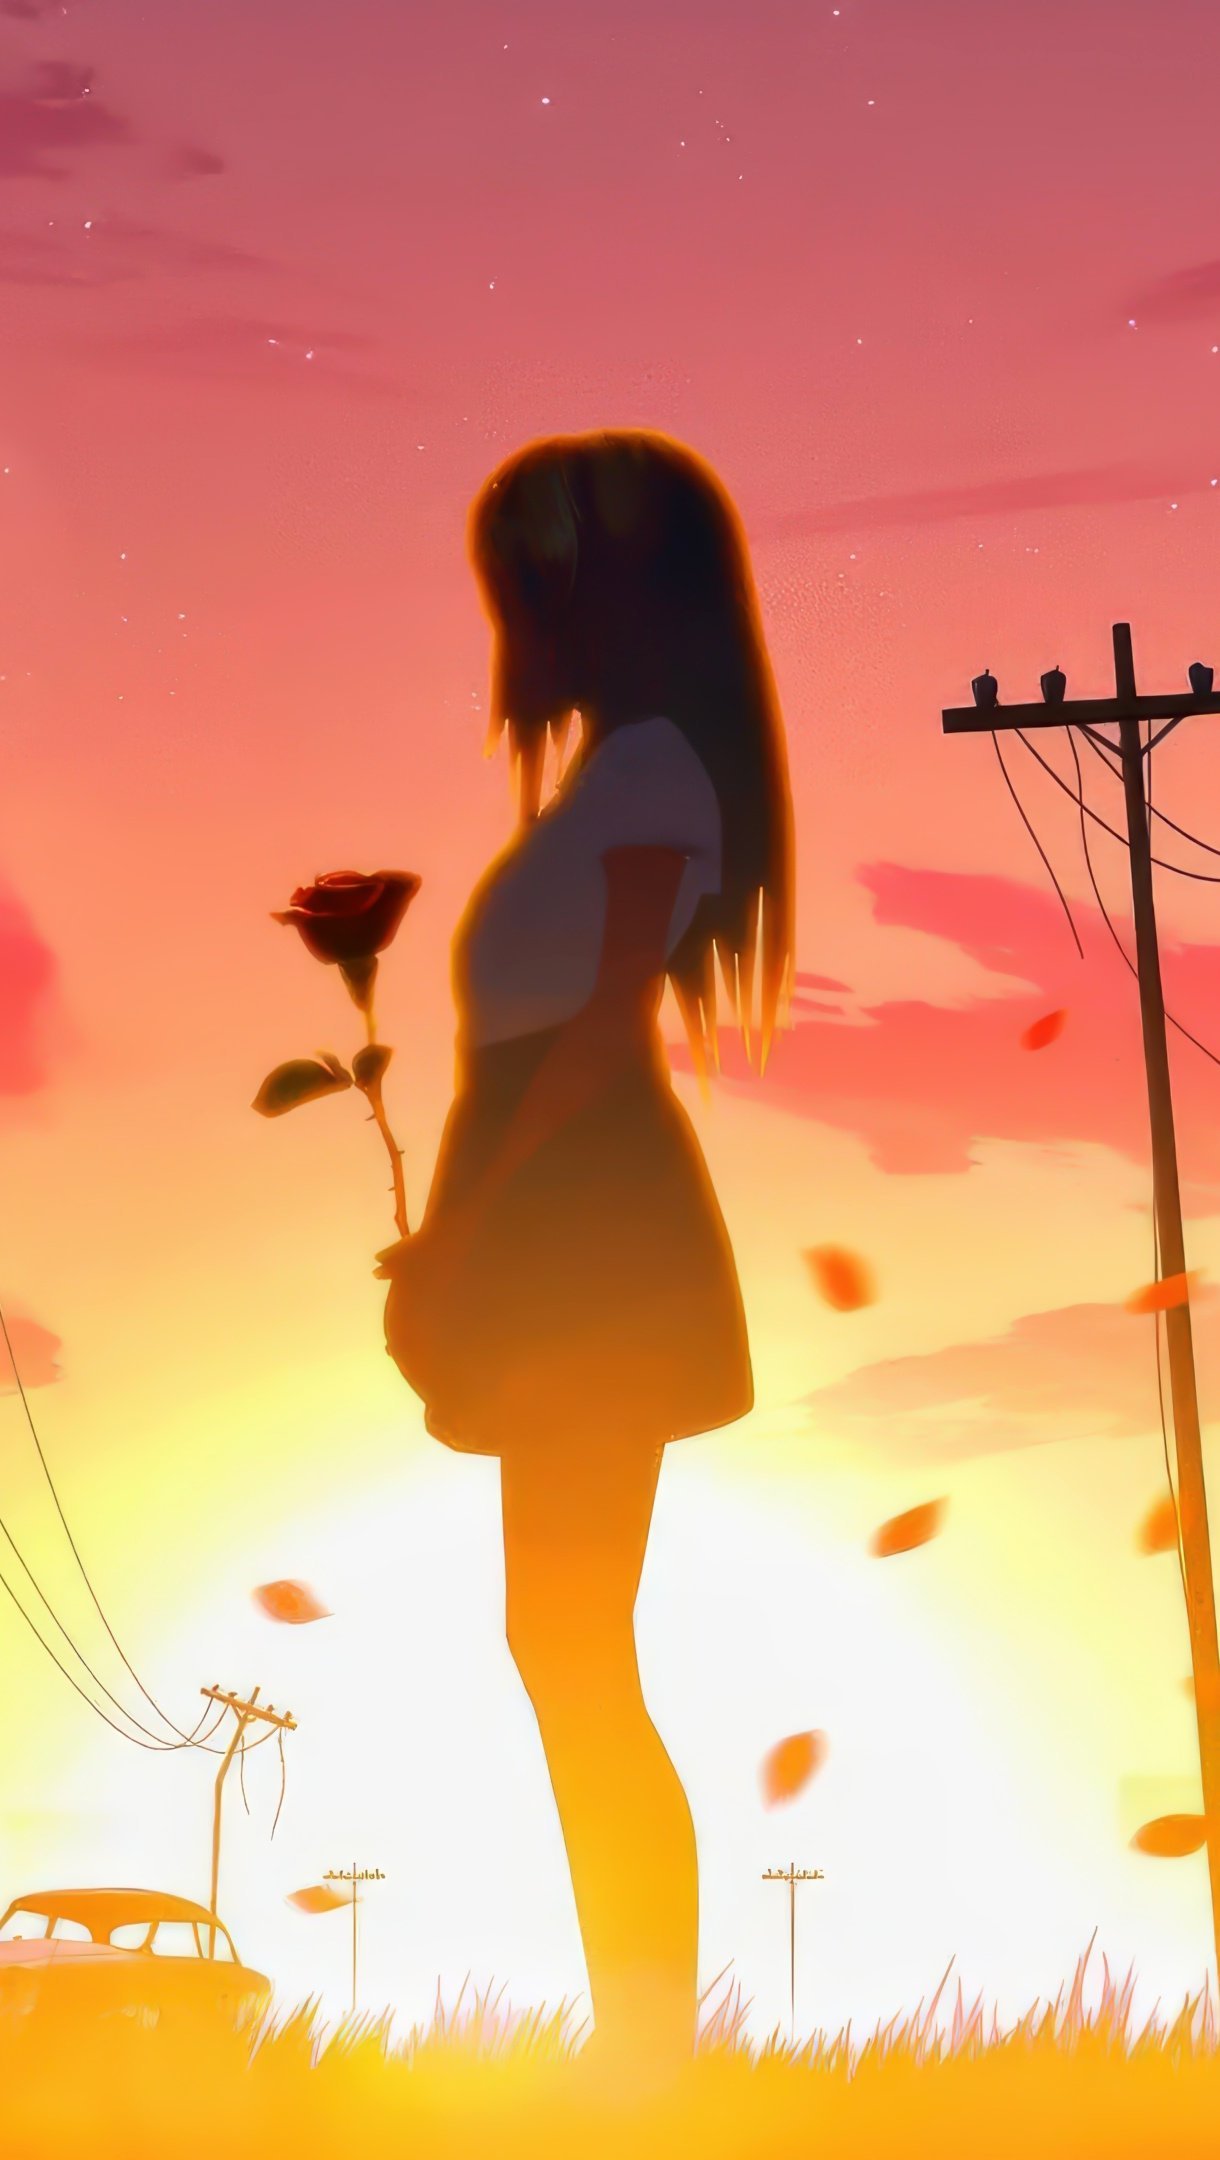 Anime Sunset - YouTube